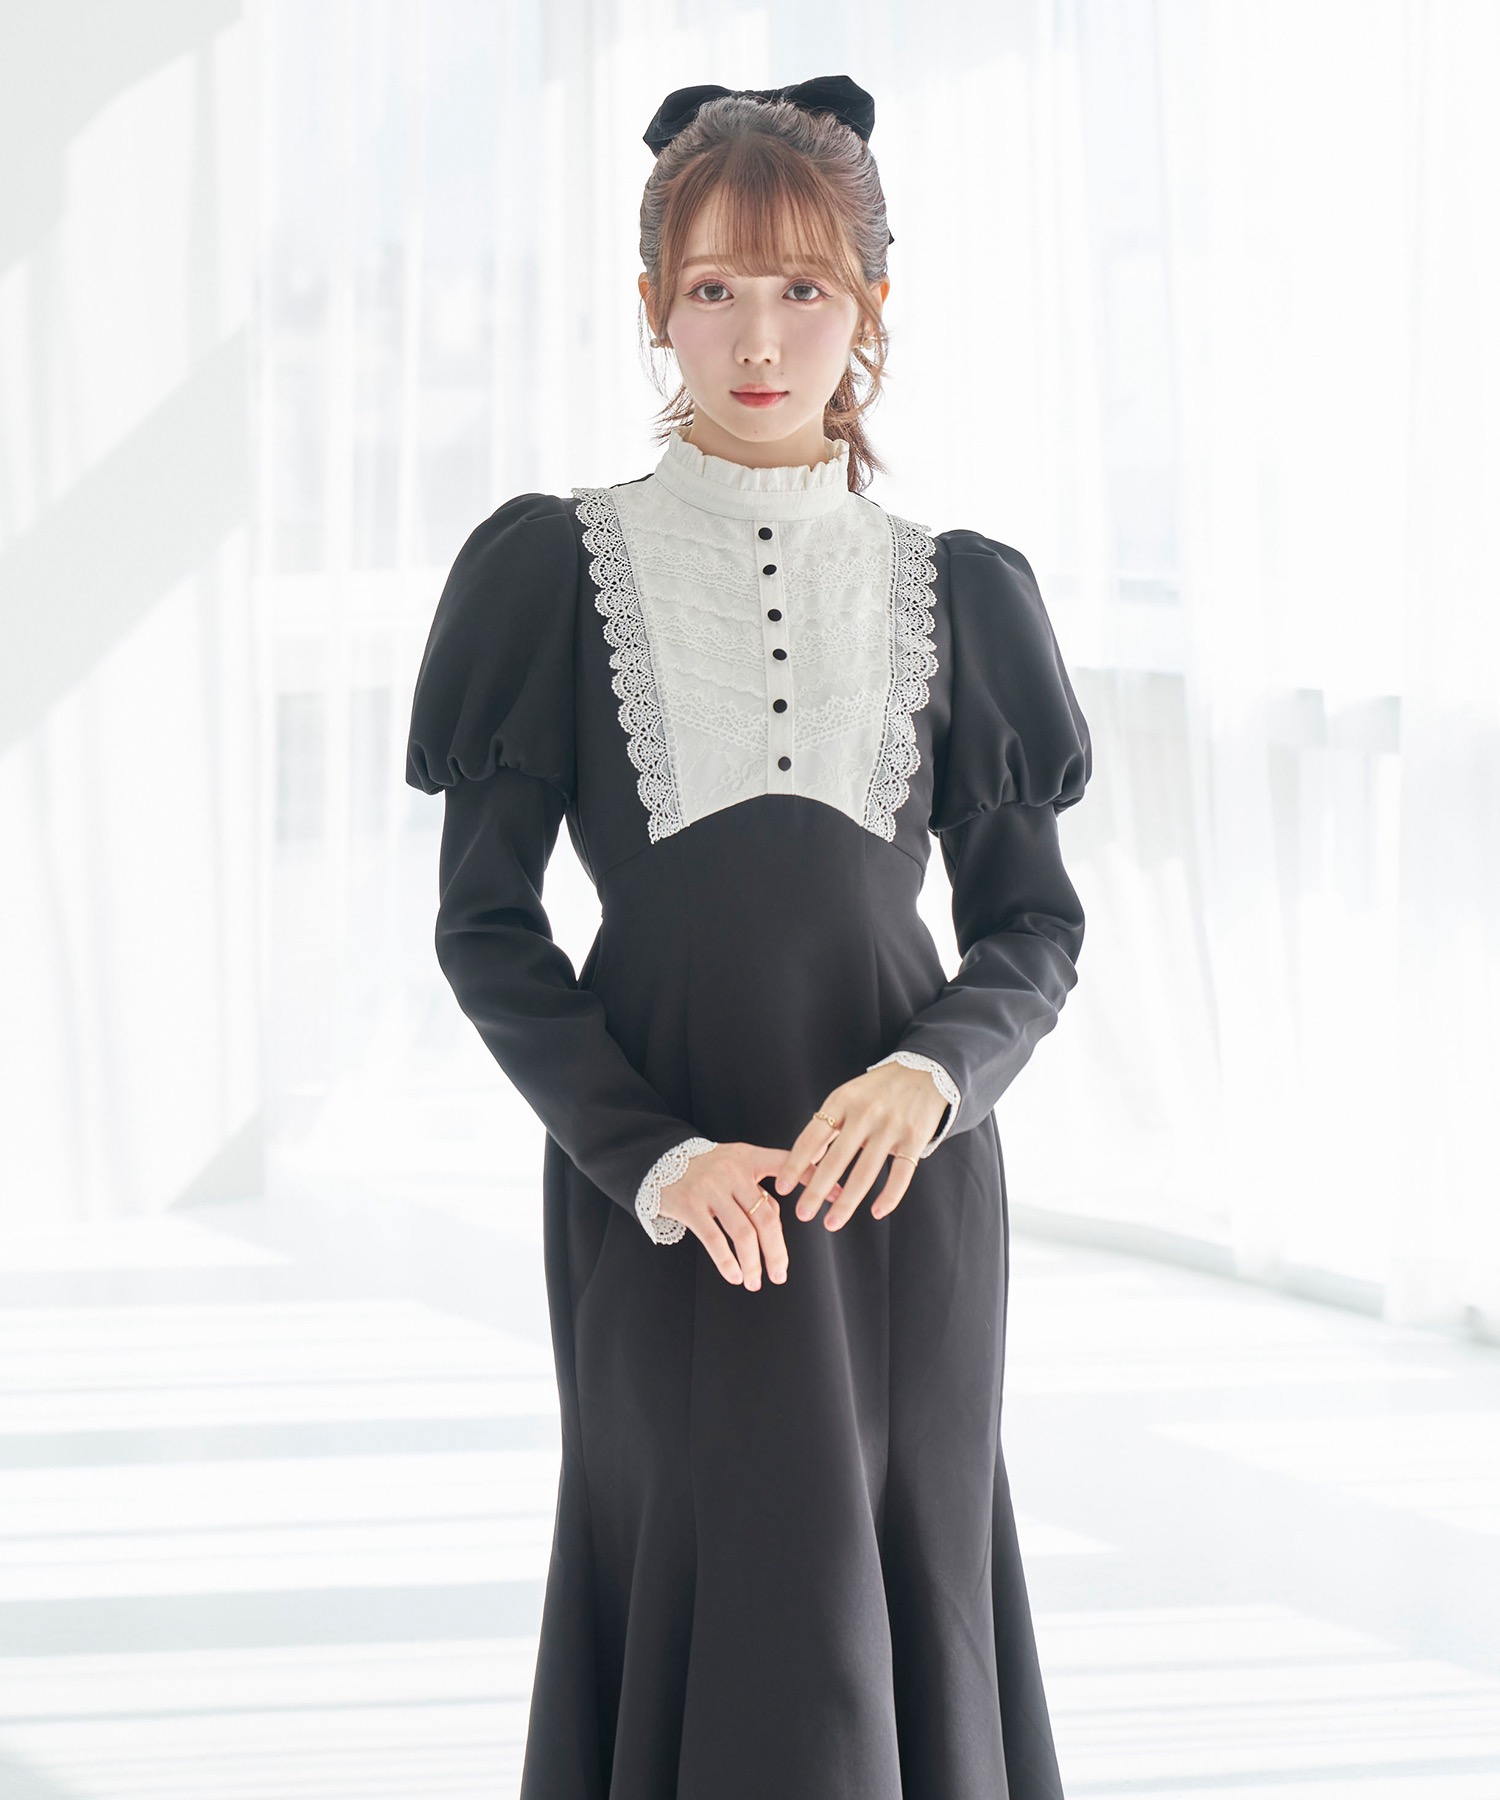 ロングワンピースRoseMuse lace maid style dress【brown】 M